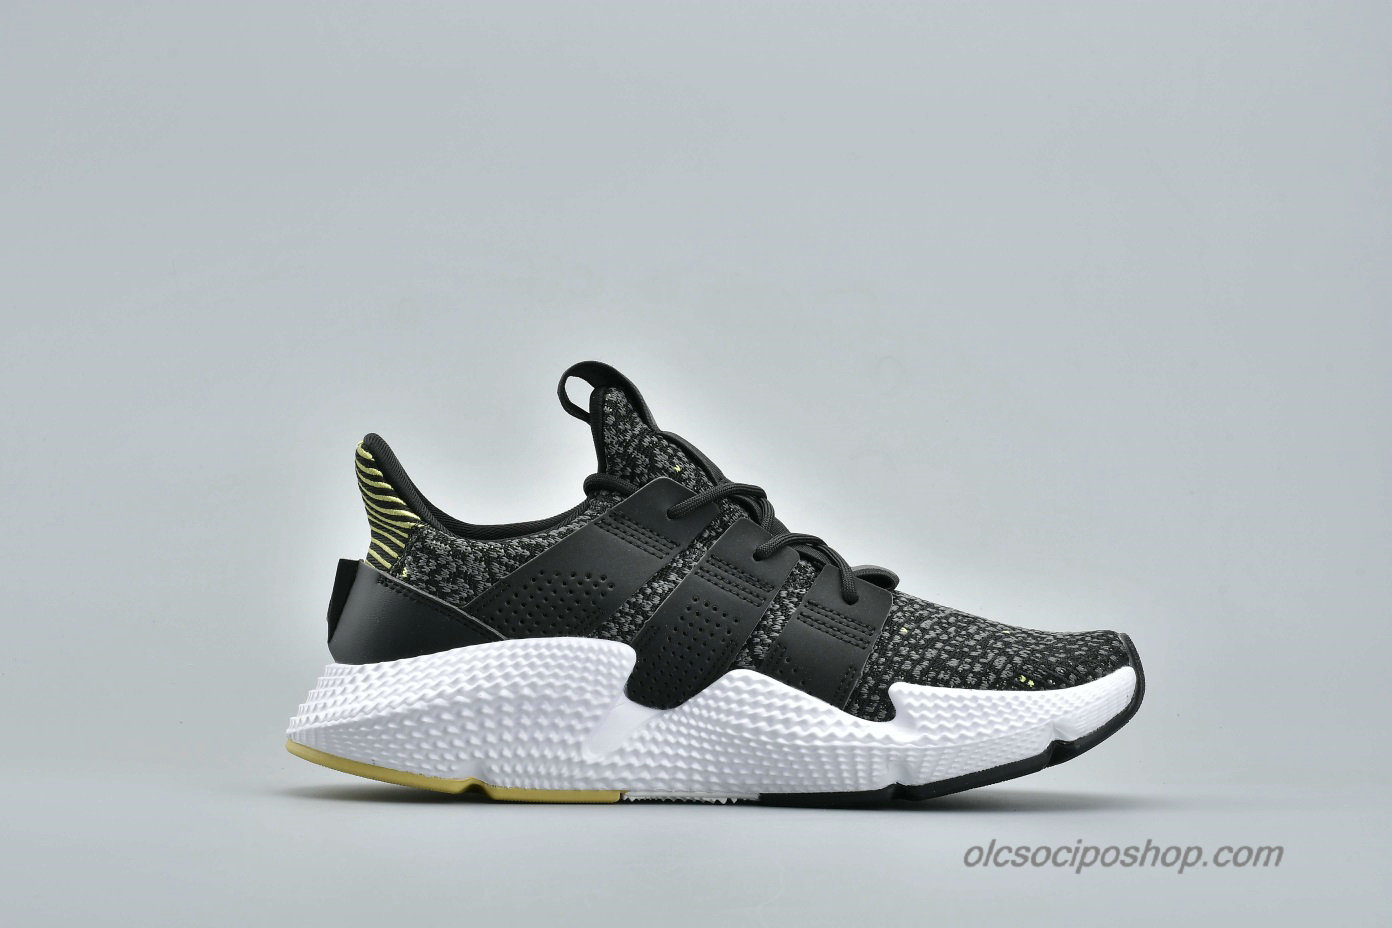 Adidas Prophere Undftd Fekete/Fehér/Sárga Cipők (B37073) - Kattintásra bezárul